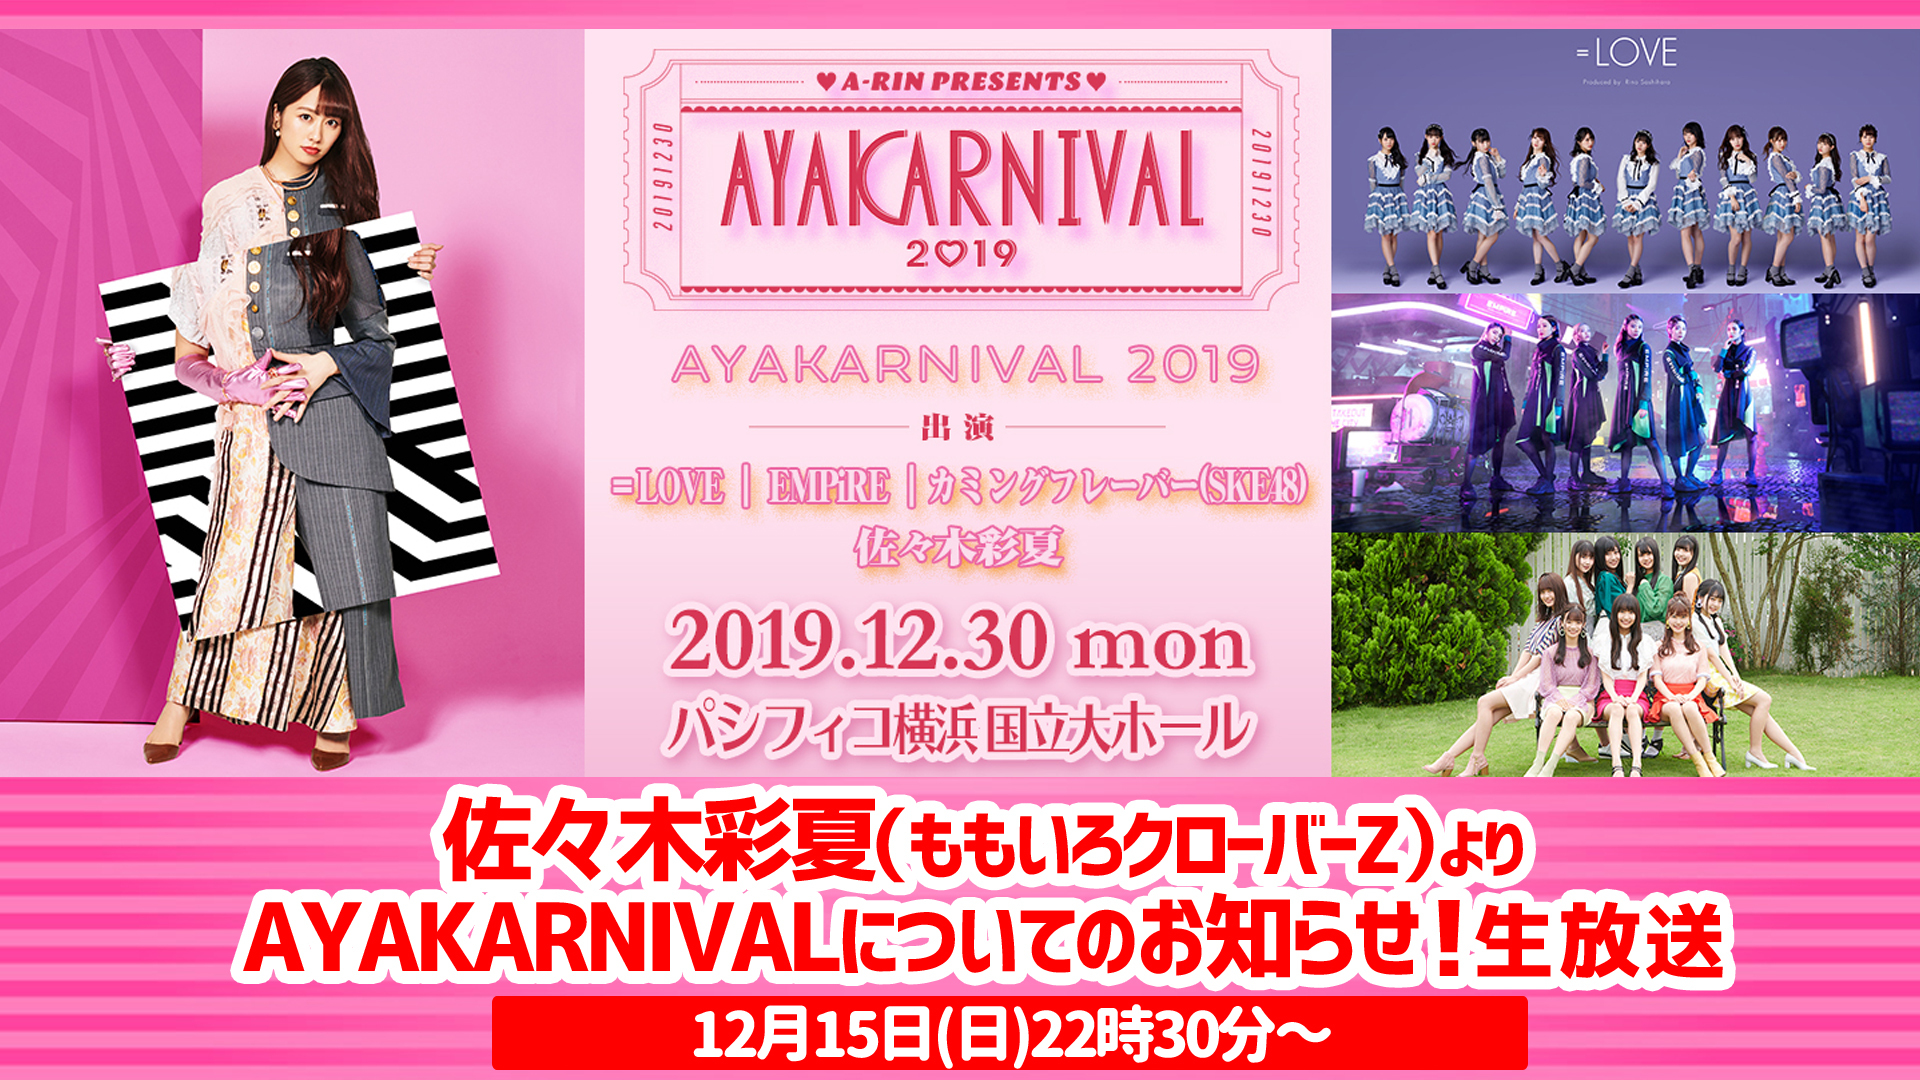 佐々木彩夏よりayakarnivalについてのお知らせ 生放送 2019 12 15 日 22 30開始 ニコニコ生放送